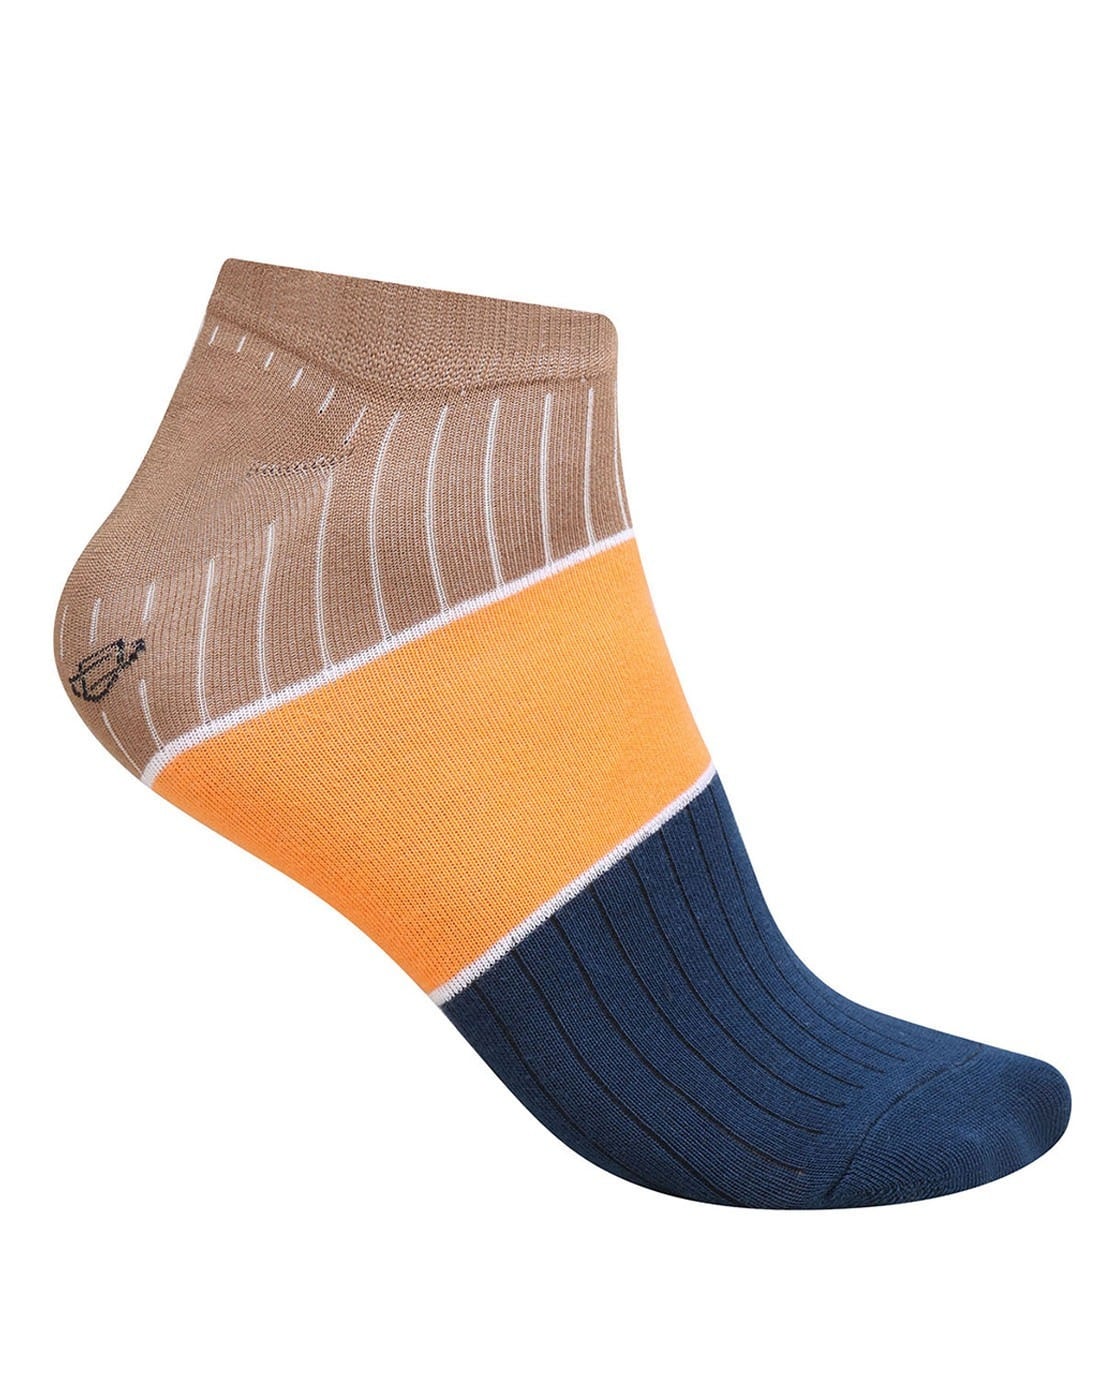 Buy Multi Socks for Men by DOLLAR Online